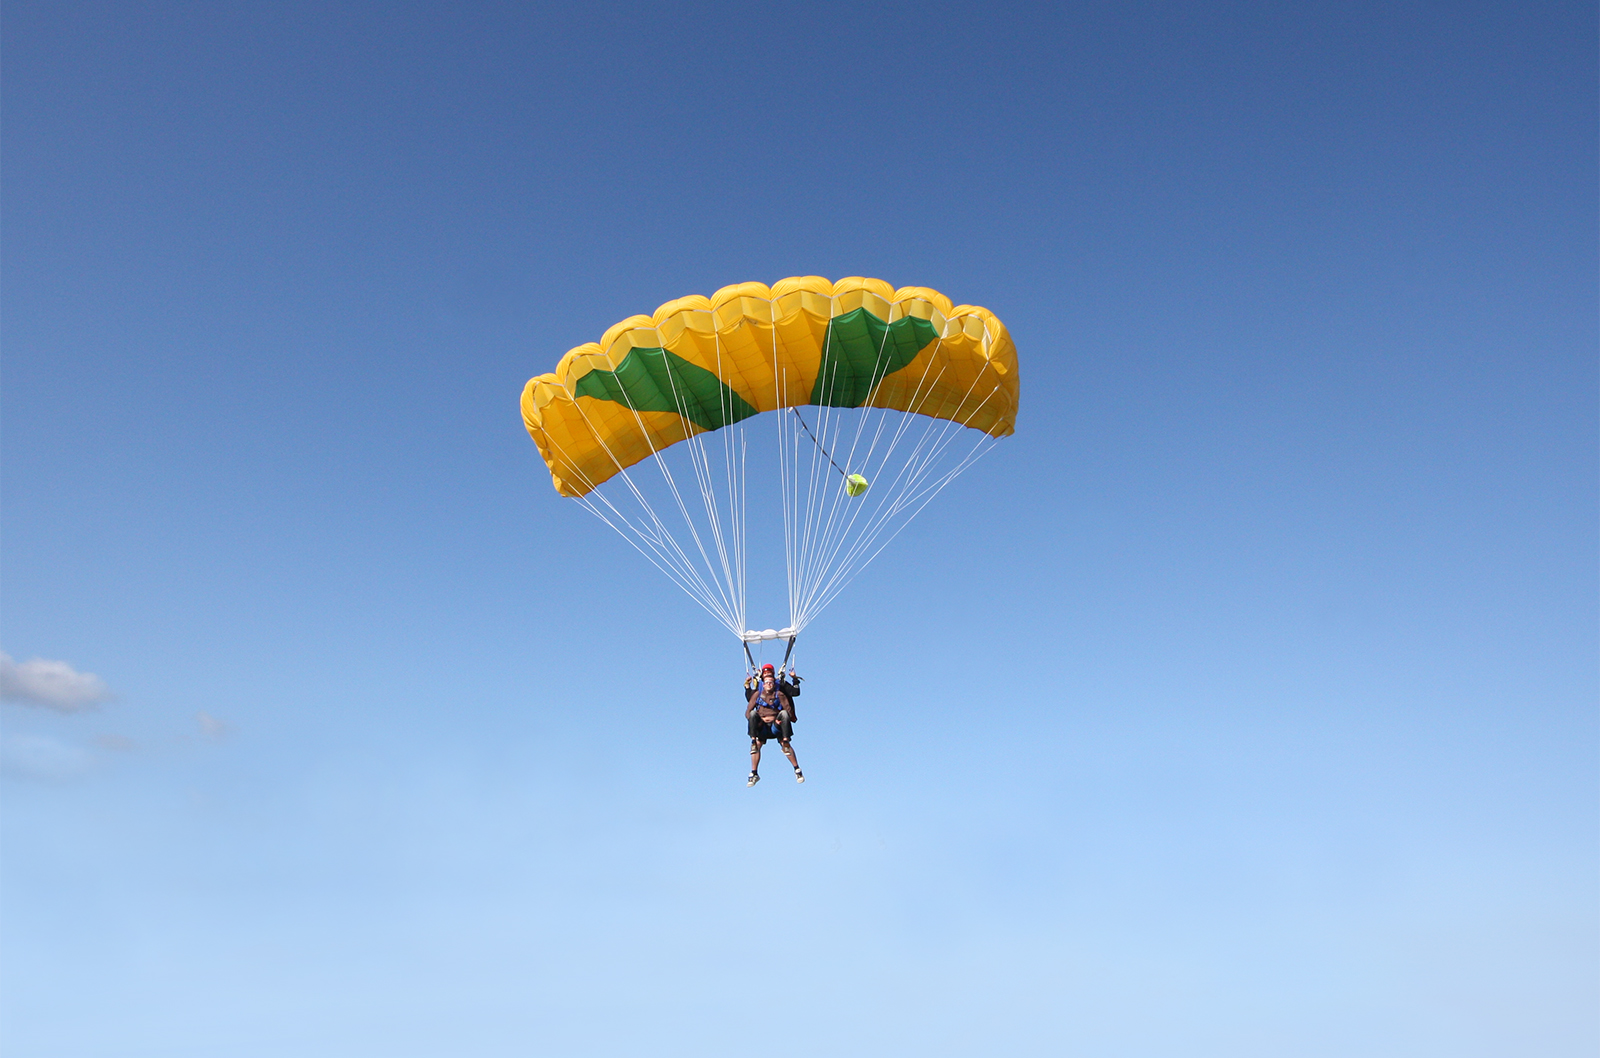 lager zaad hoofdstuk Découvrir le parachutisme » Parachutisme Vannes Bretagne